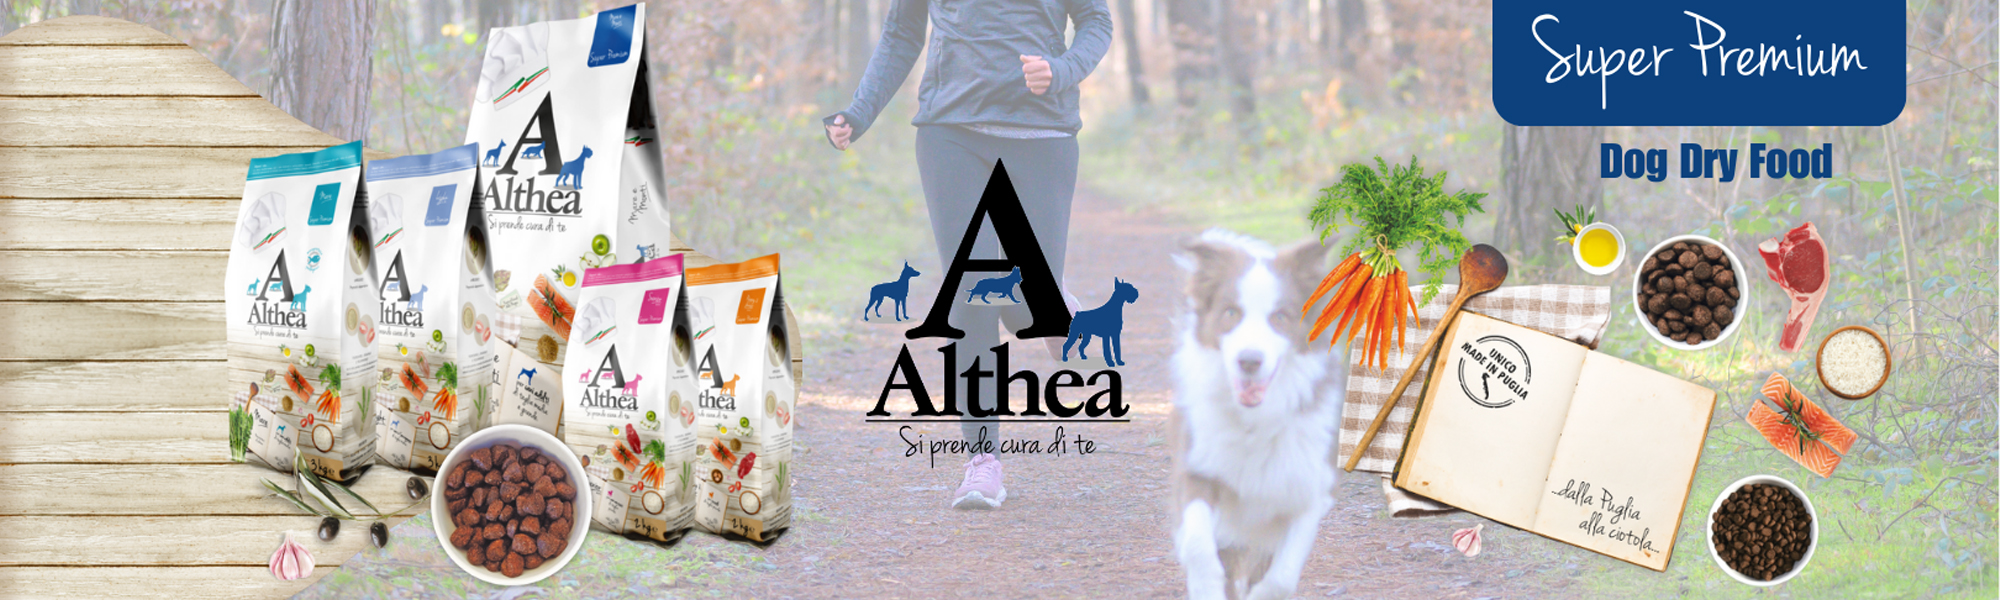 Althea Super Premium Dog Dry Food